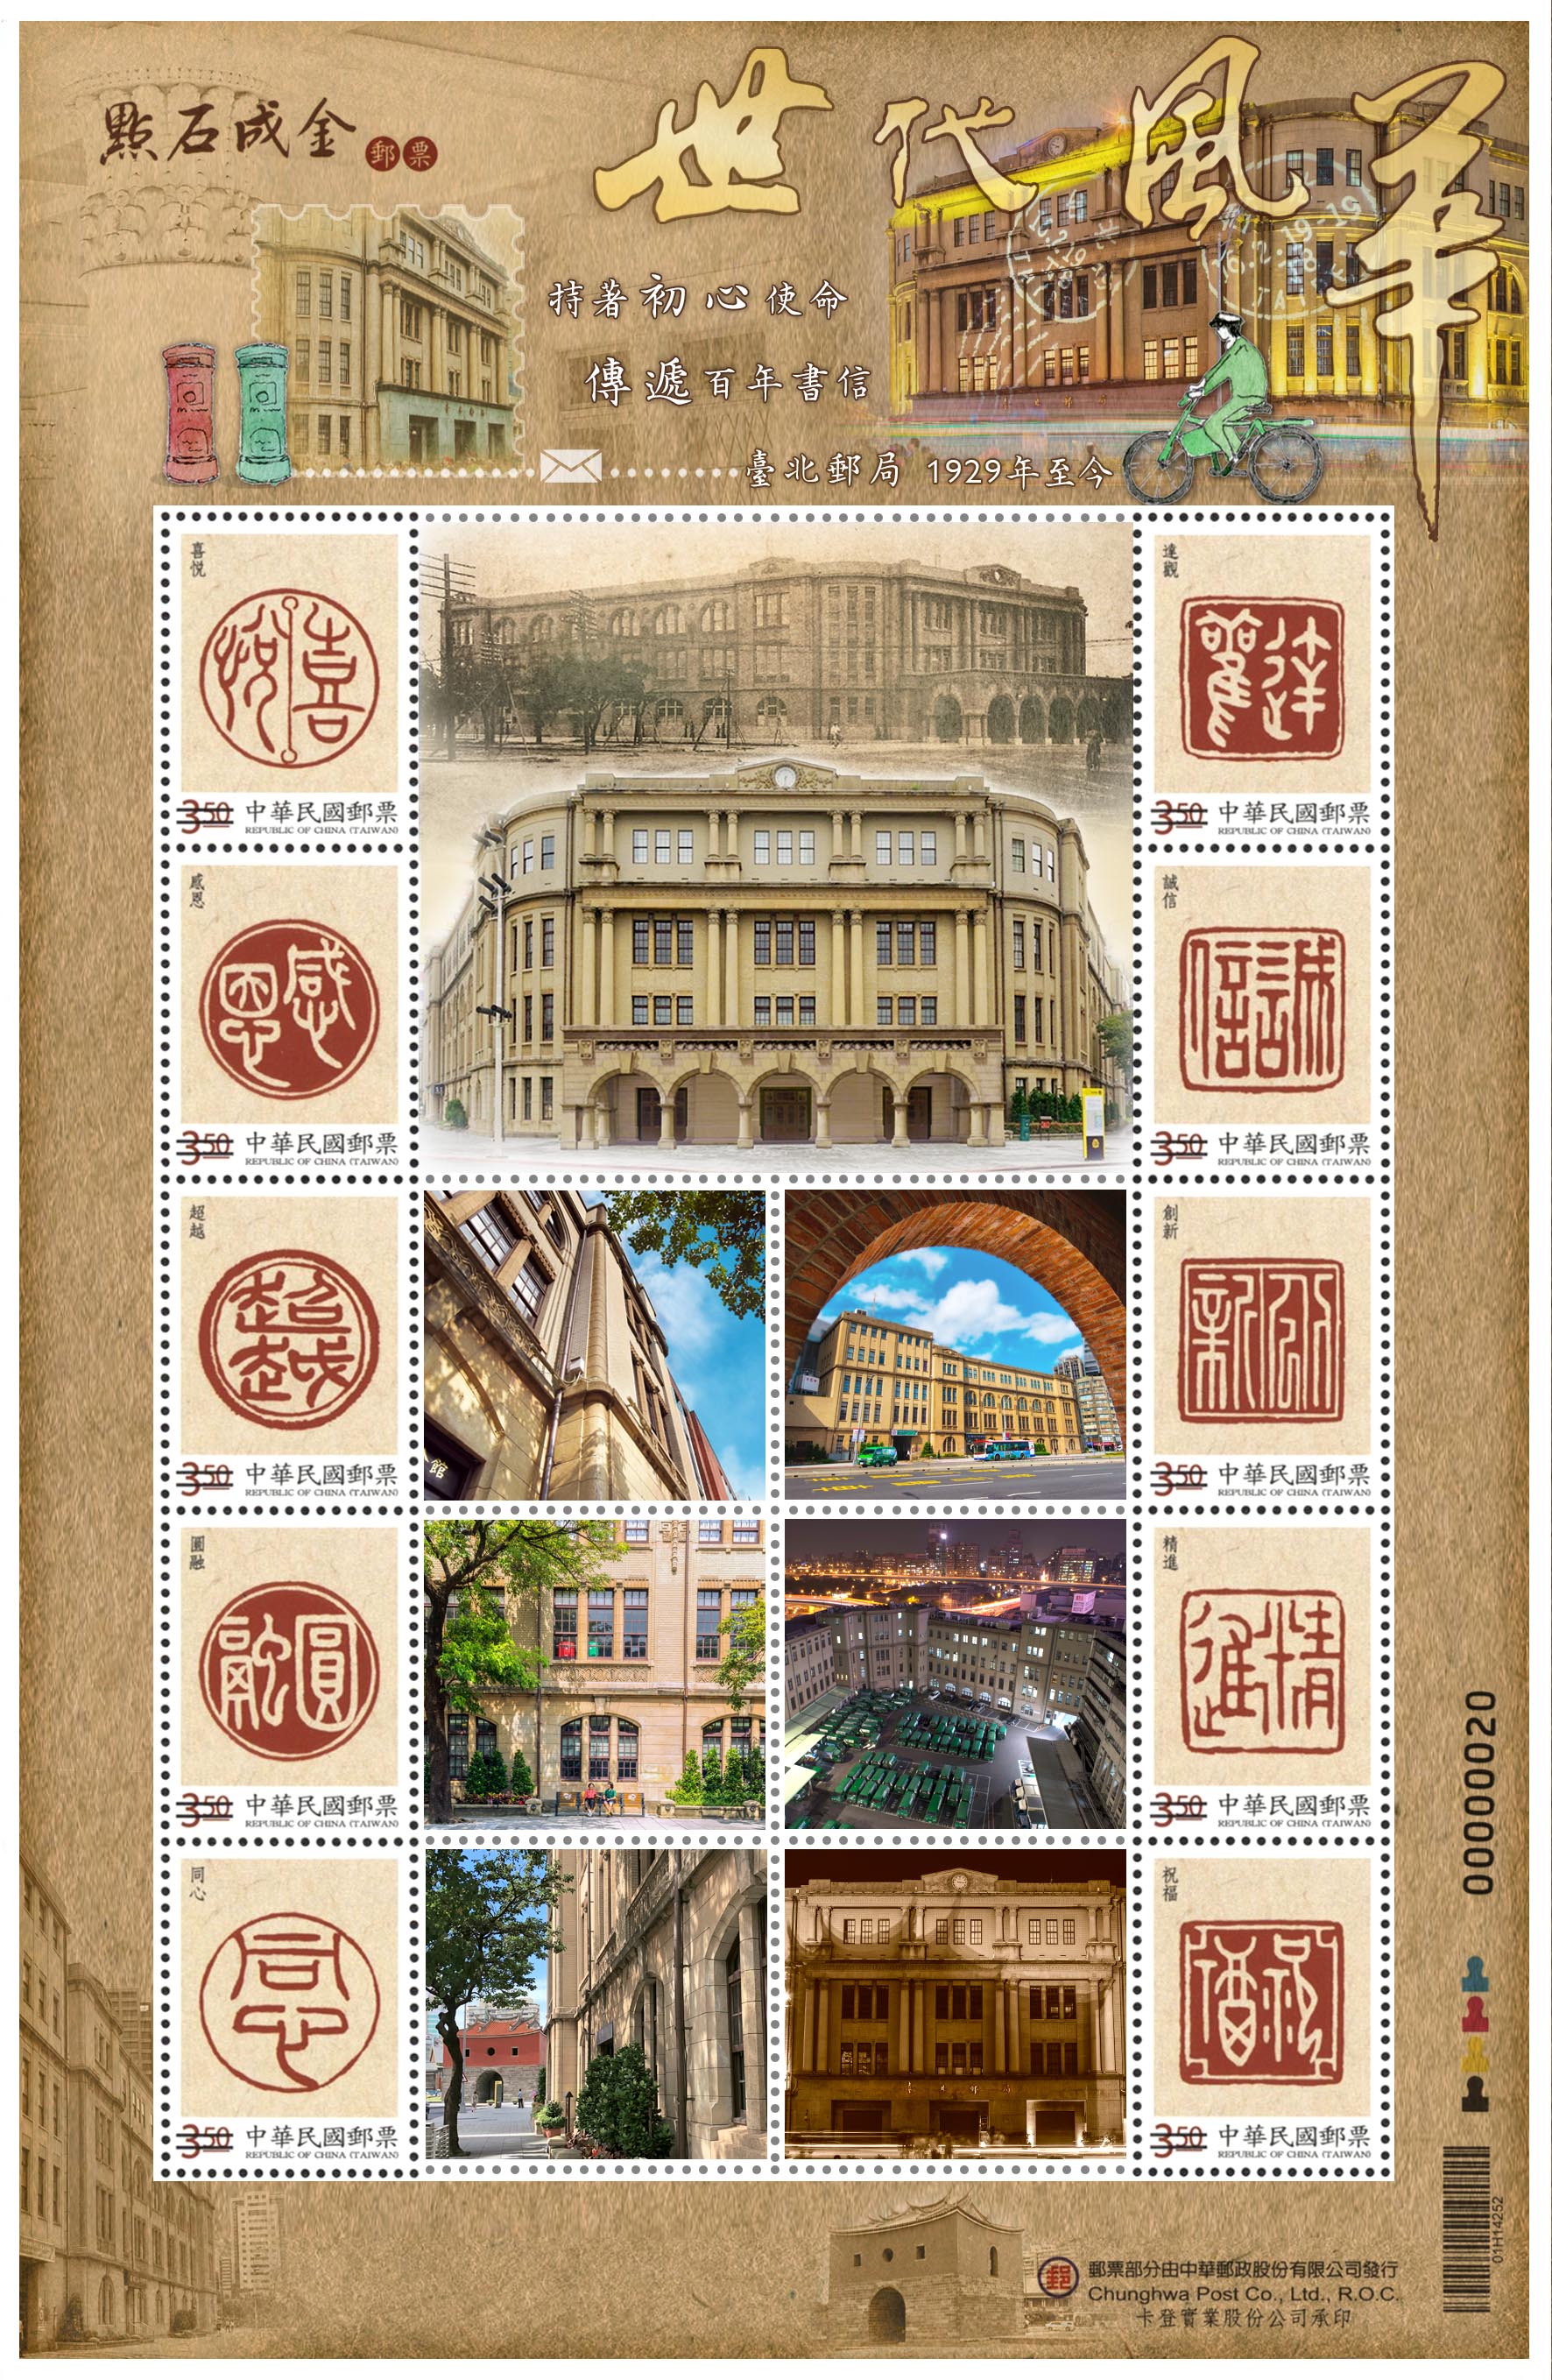 臺北北門郵局世代風華個人化郵票